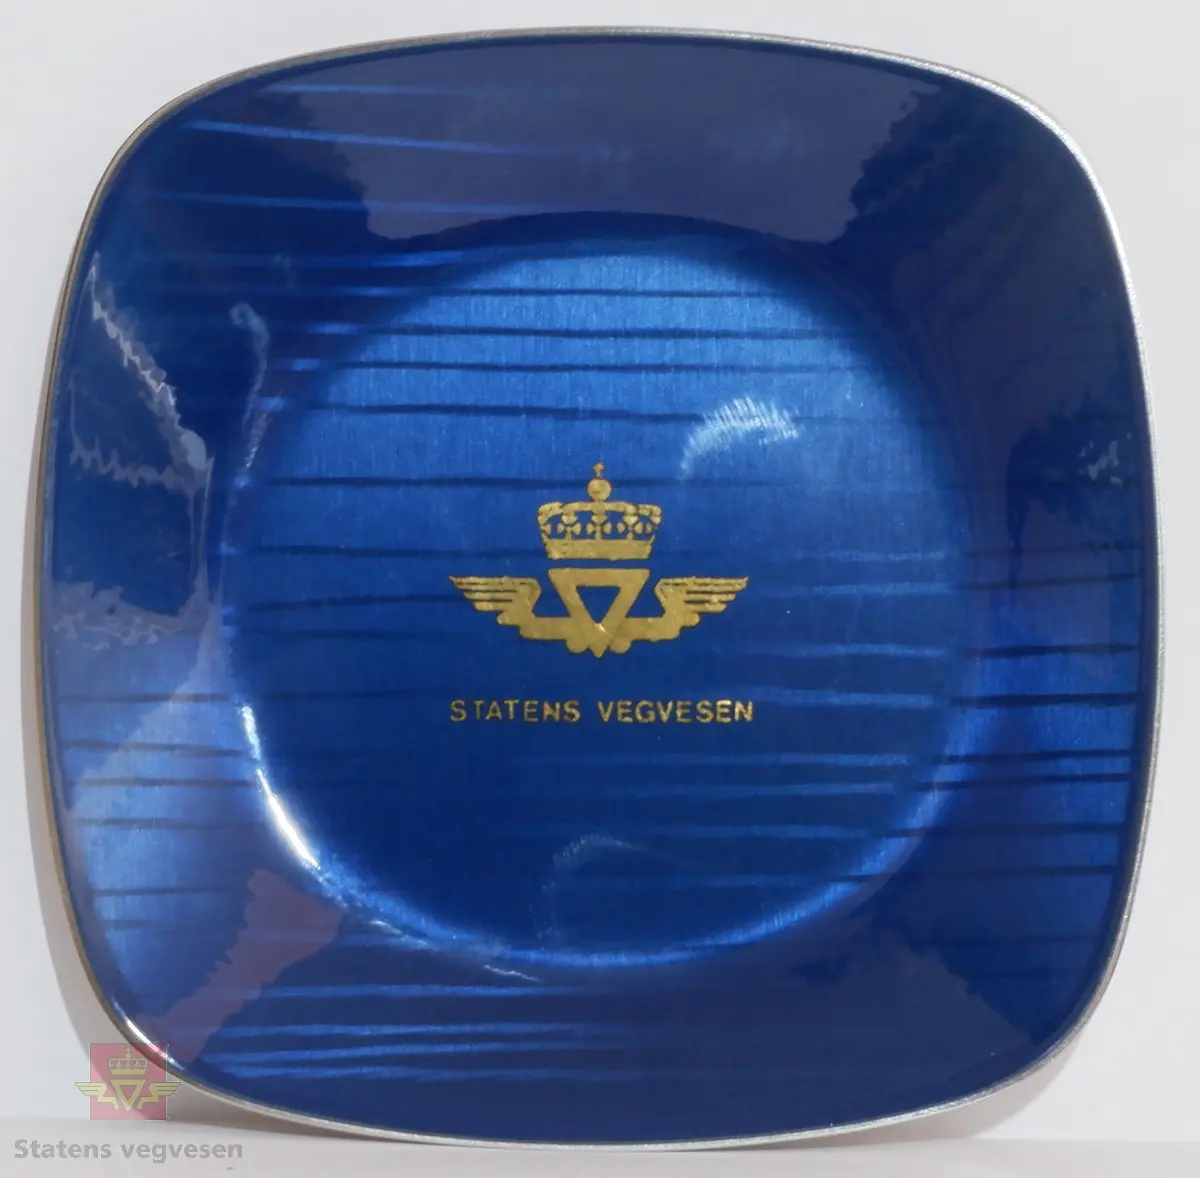 Skålformet lite blått askebeger i metall med Statens vegvesens logo i gull. På undersiden er det ubehandlet metall. Firkantet utførelse med avrundede hjørner.
